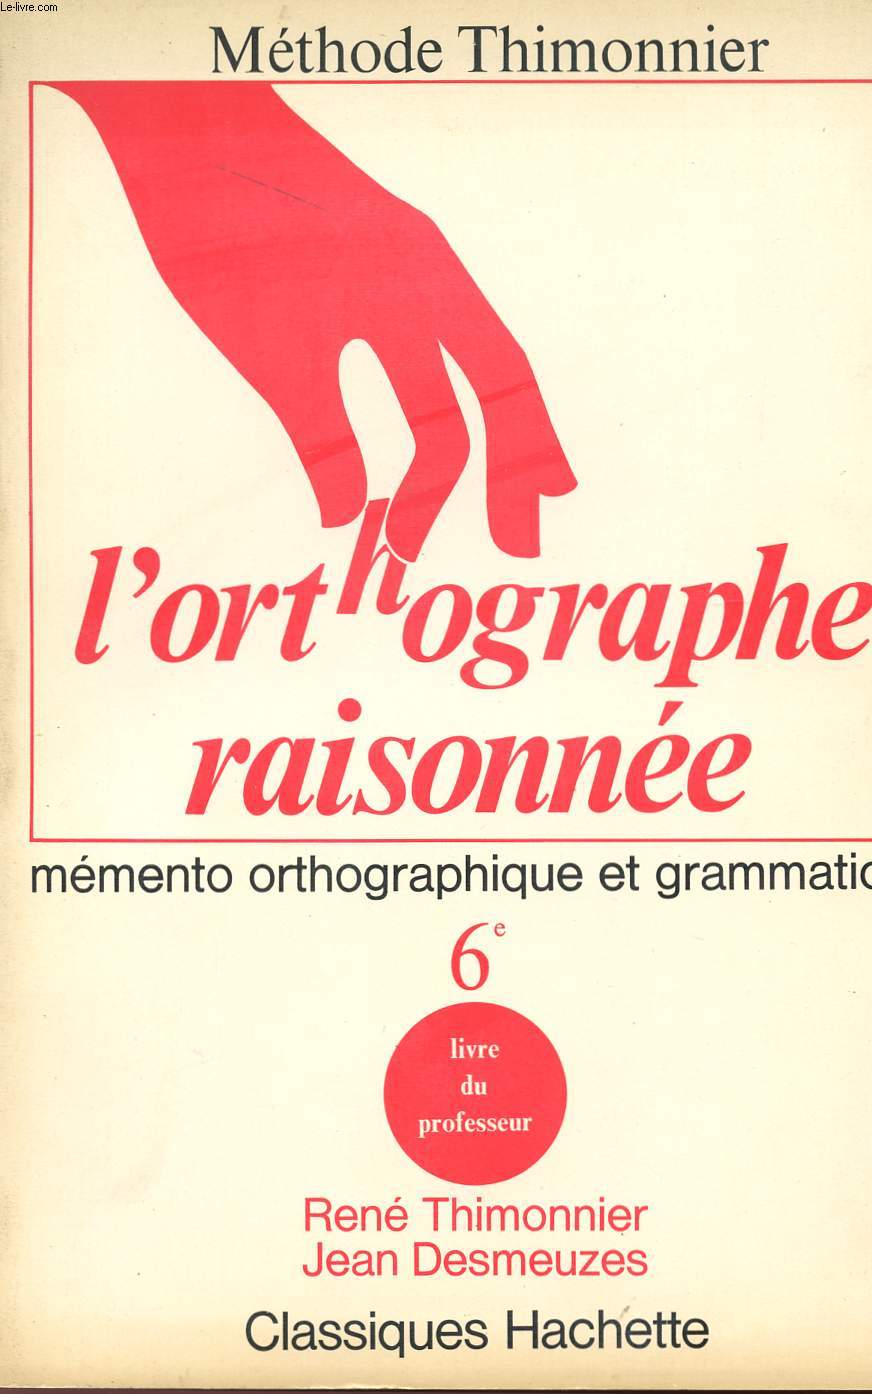 L'ORTHOGRAPHE RAISONNEE - MEMENTO ORTHOGRAPHIQUE ET GRAMMATICAL - 6 - LIVRE DU PROFESSEUR - METHODE THIMONNIER.